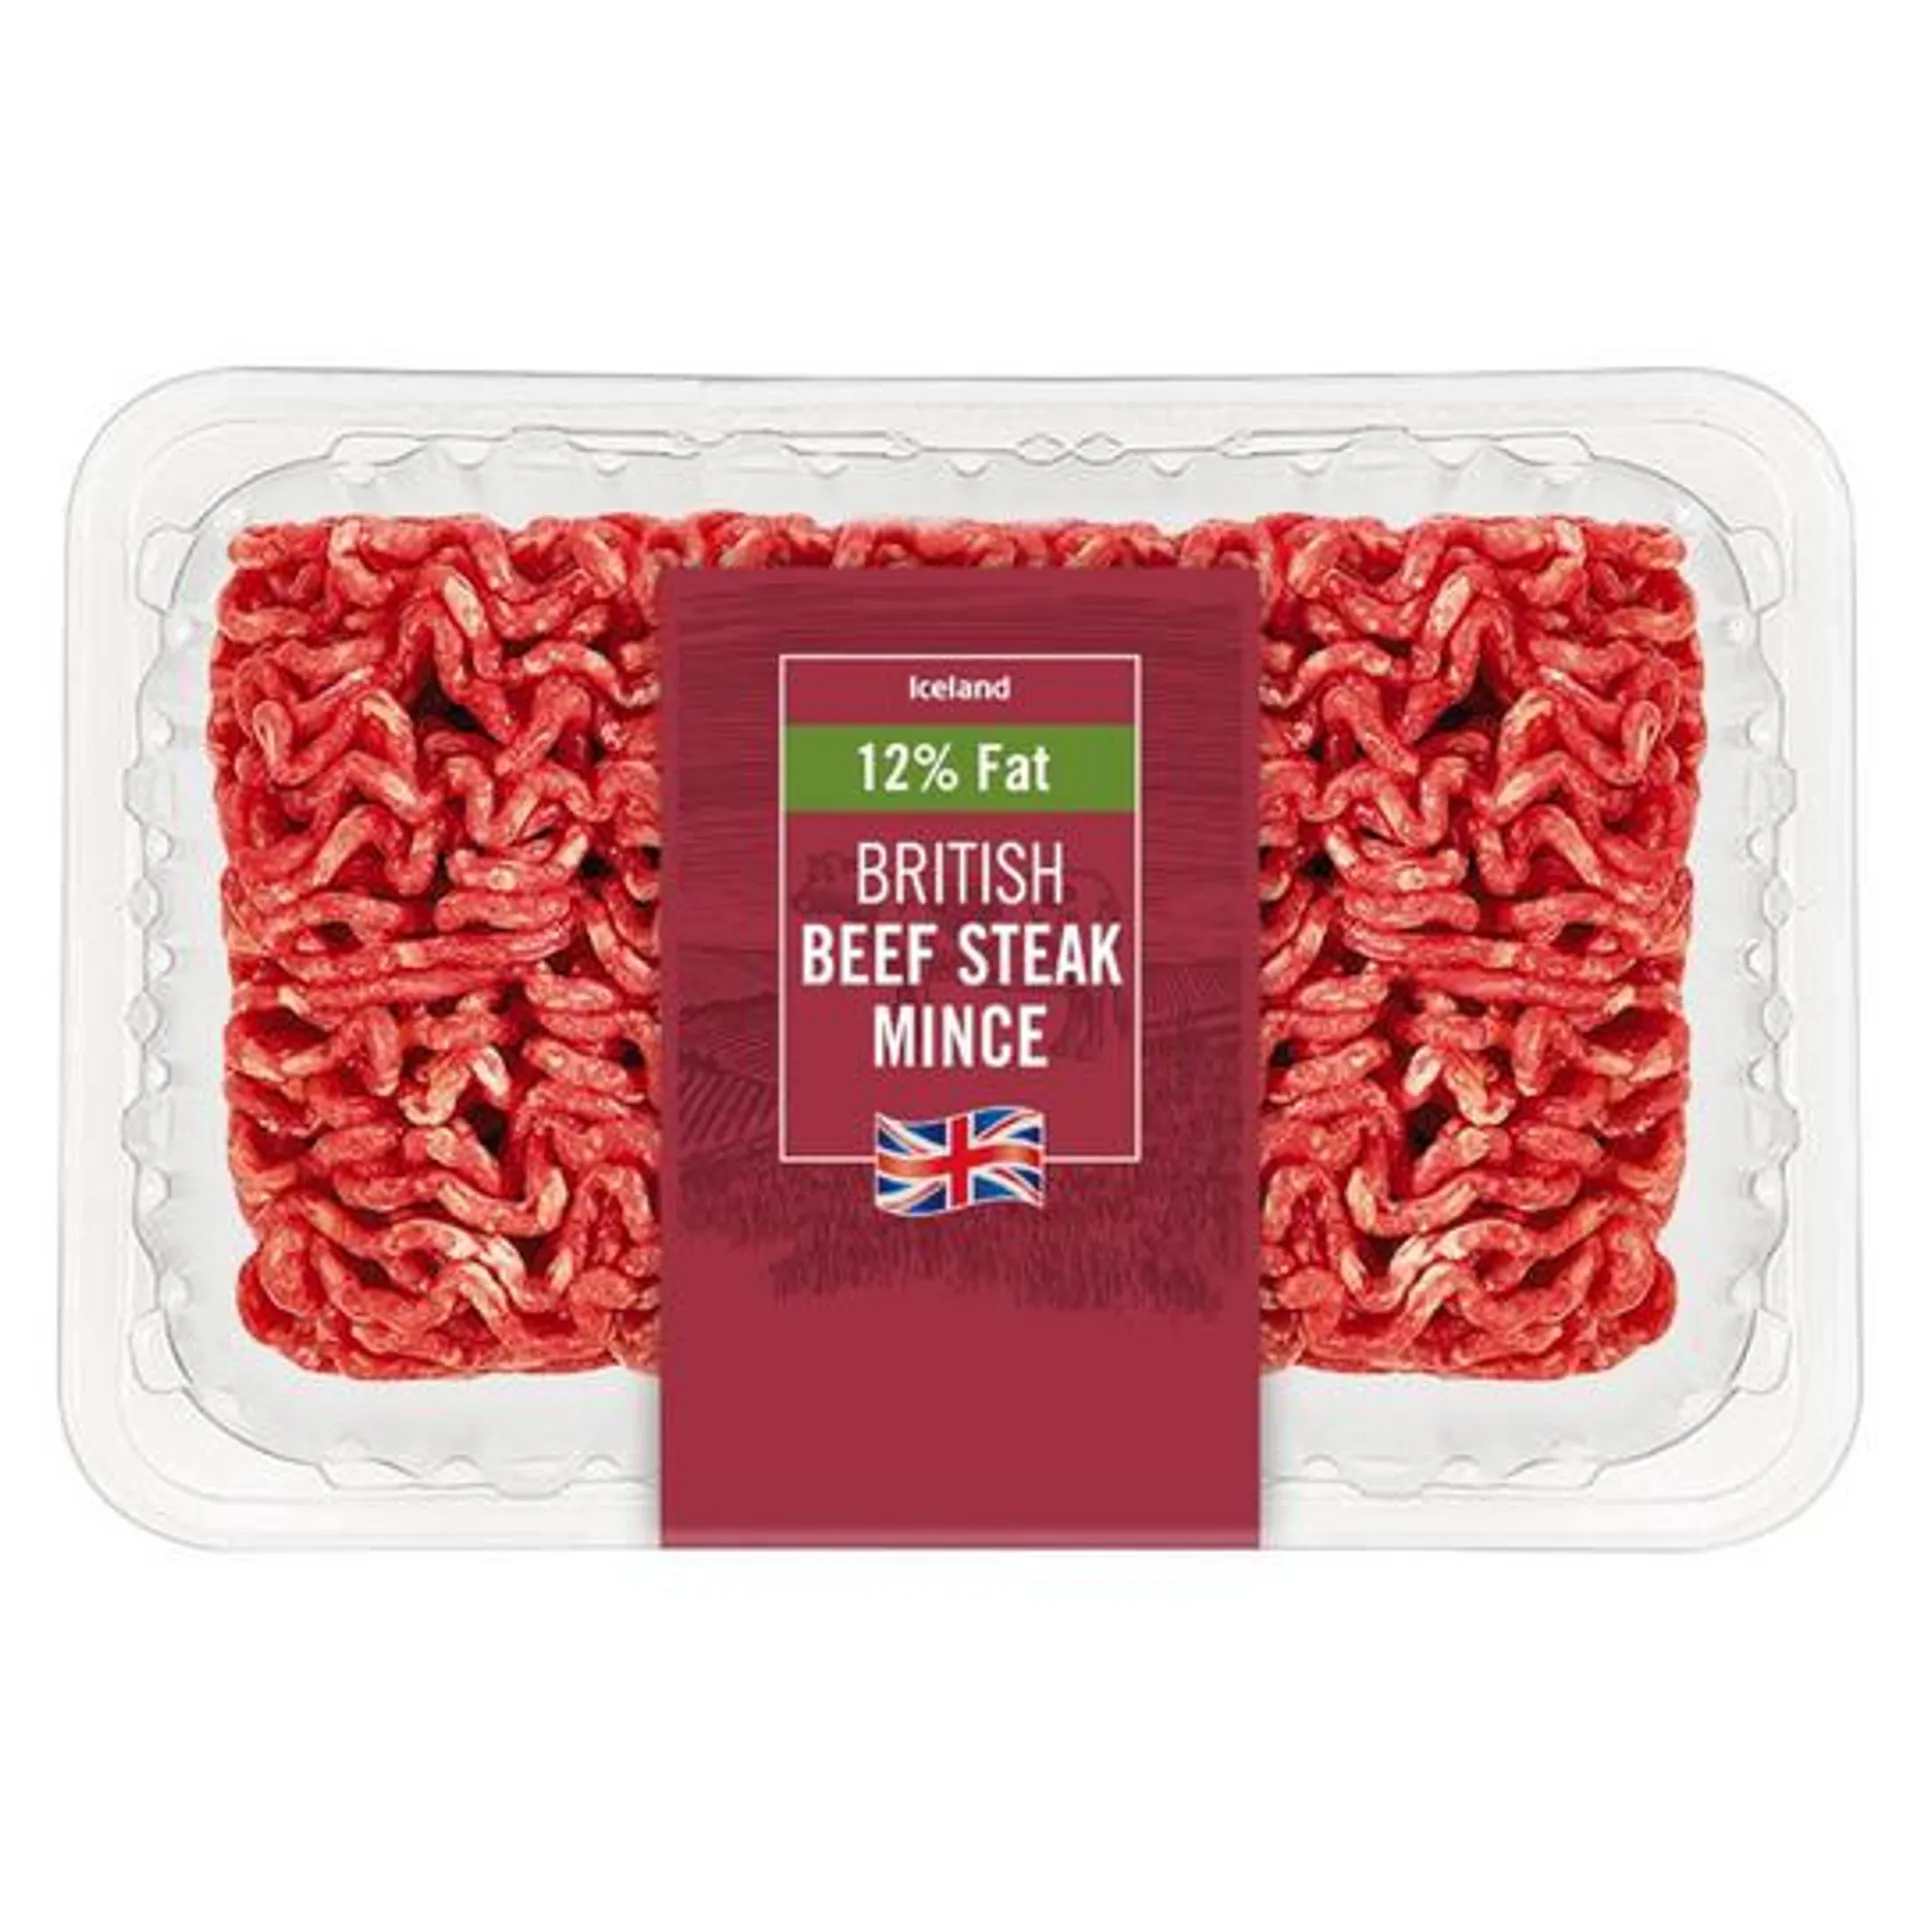 Iceland British Beef Steak Mince 12% Fat 425g